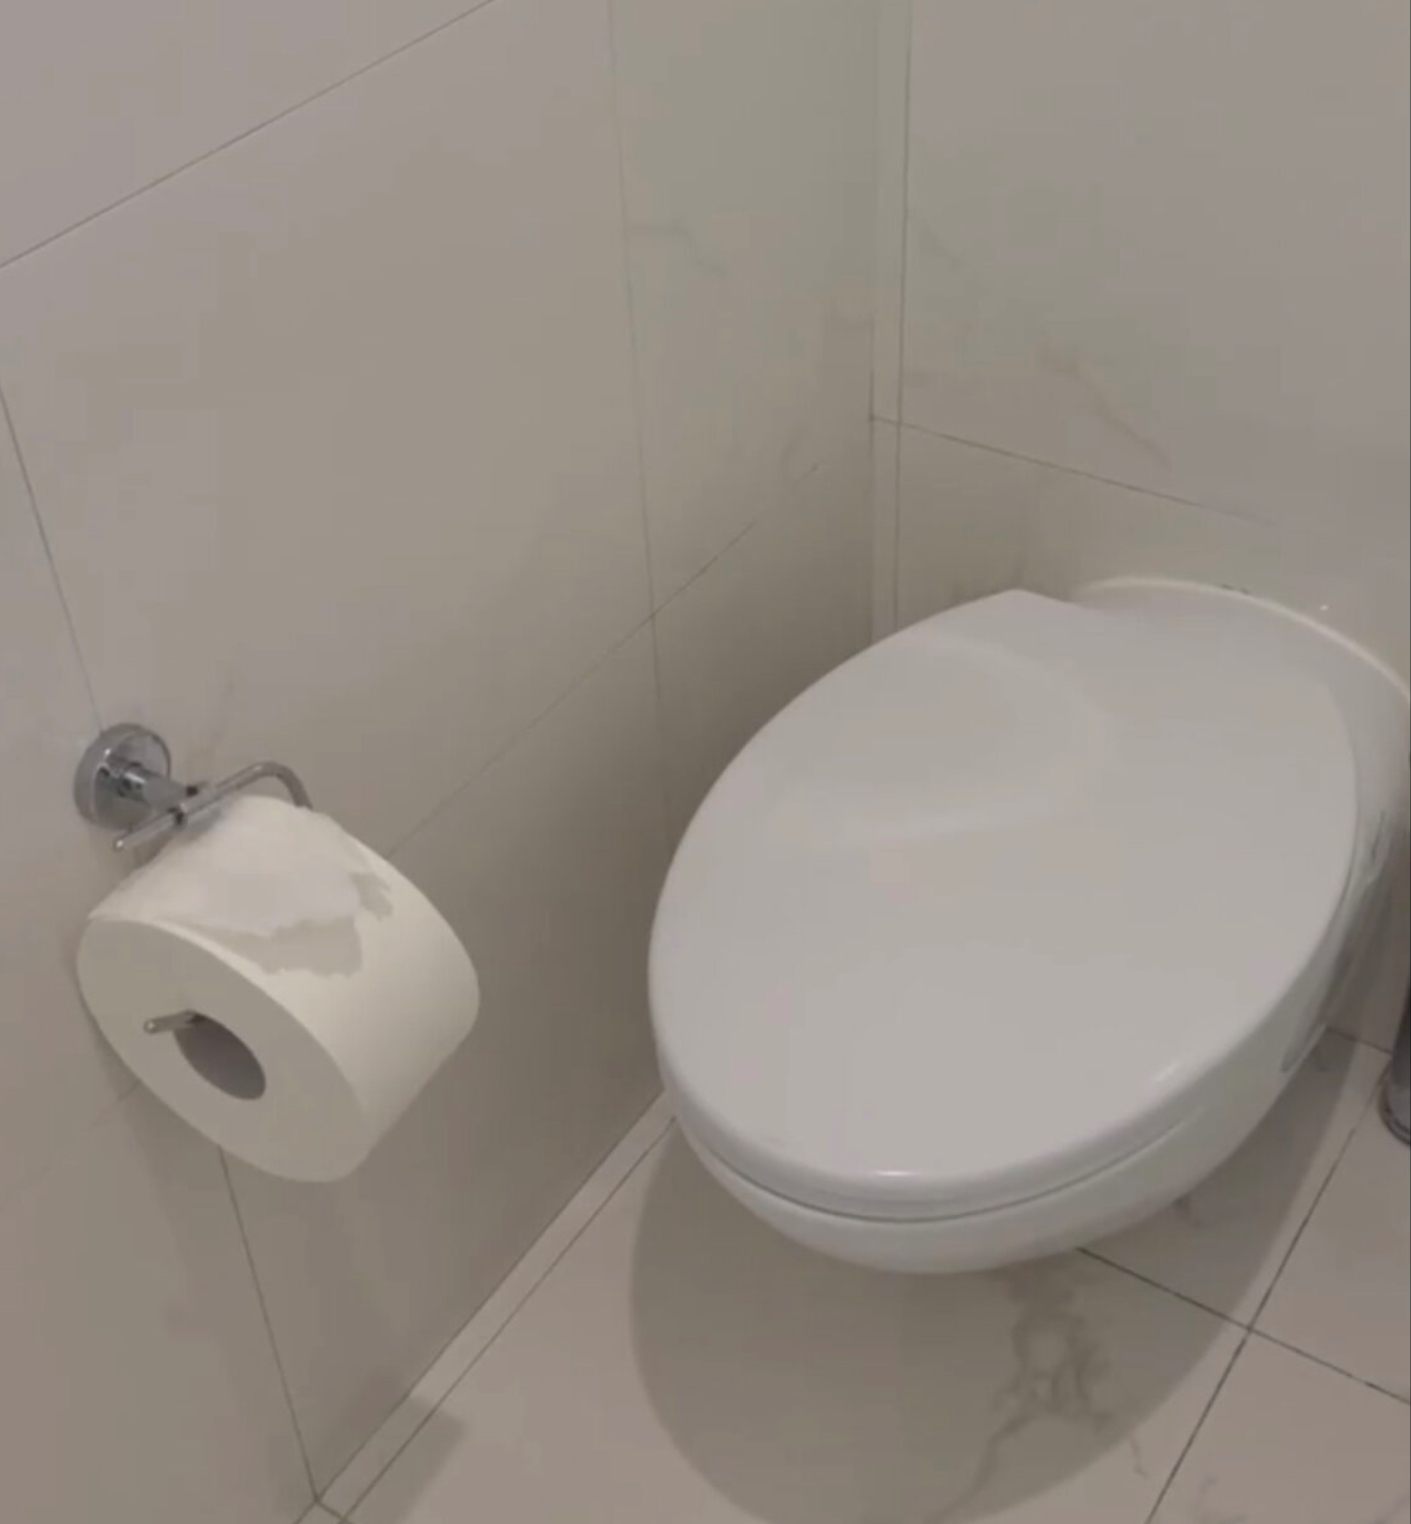 Ксения Собчак попала впросак в туалете: казус сфотографировали